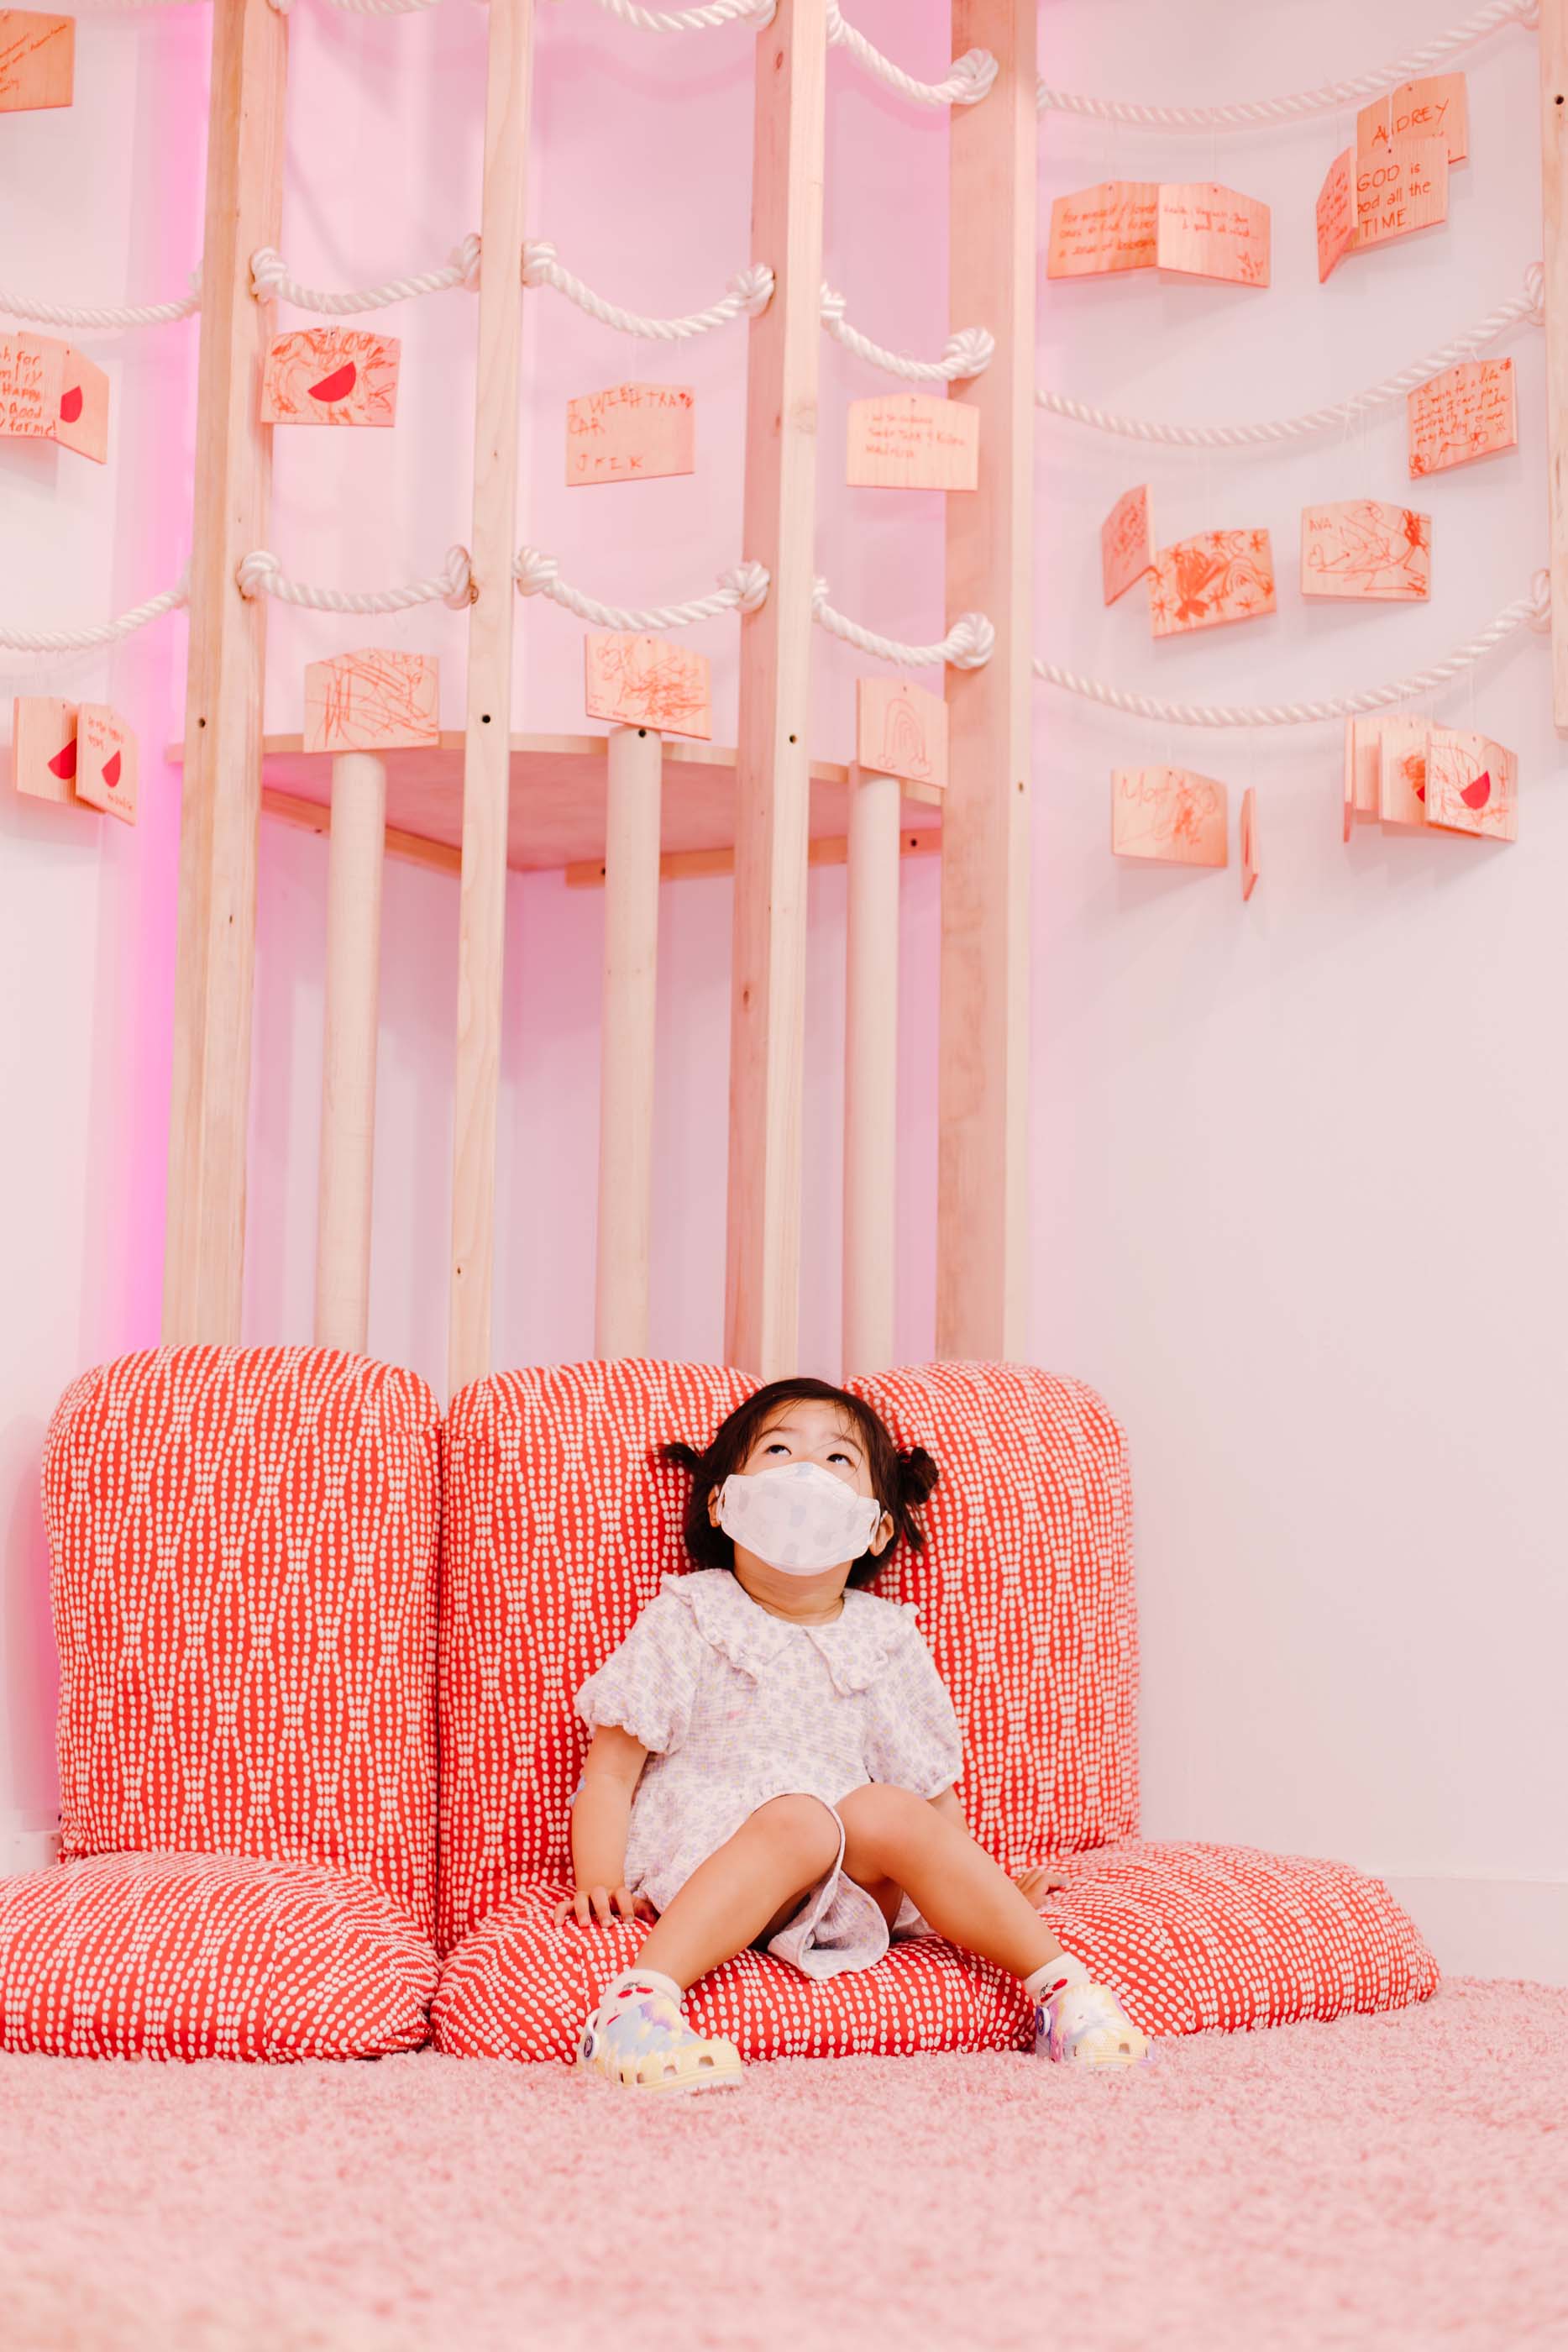 孩子坐在粉红色的垫子上